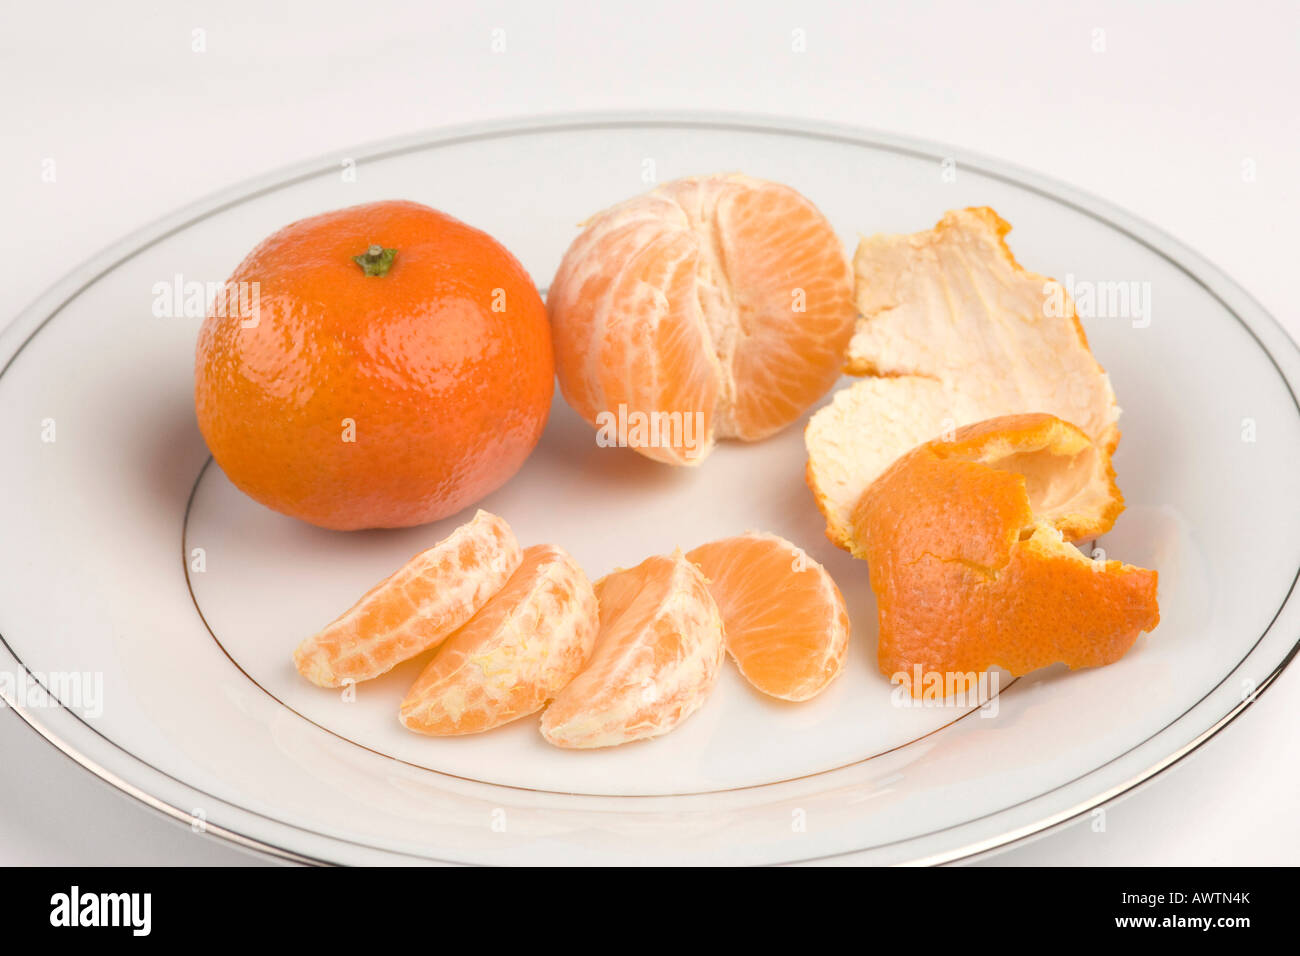 Segmenti di mandarino / Clementine frutta arancione Foto Stock